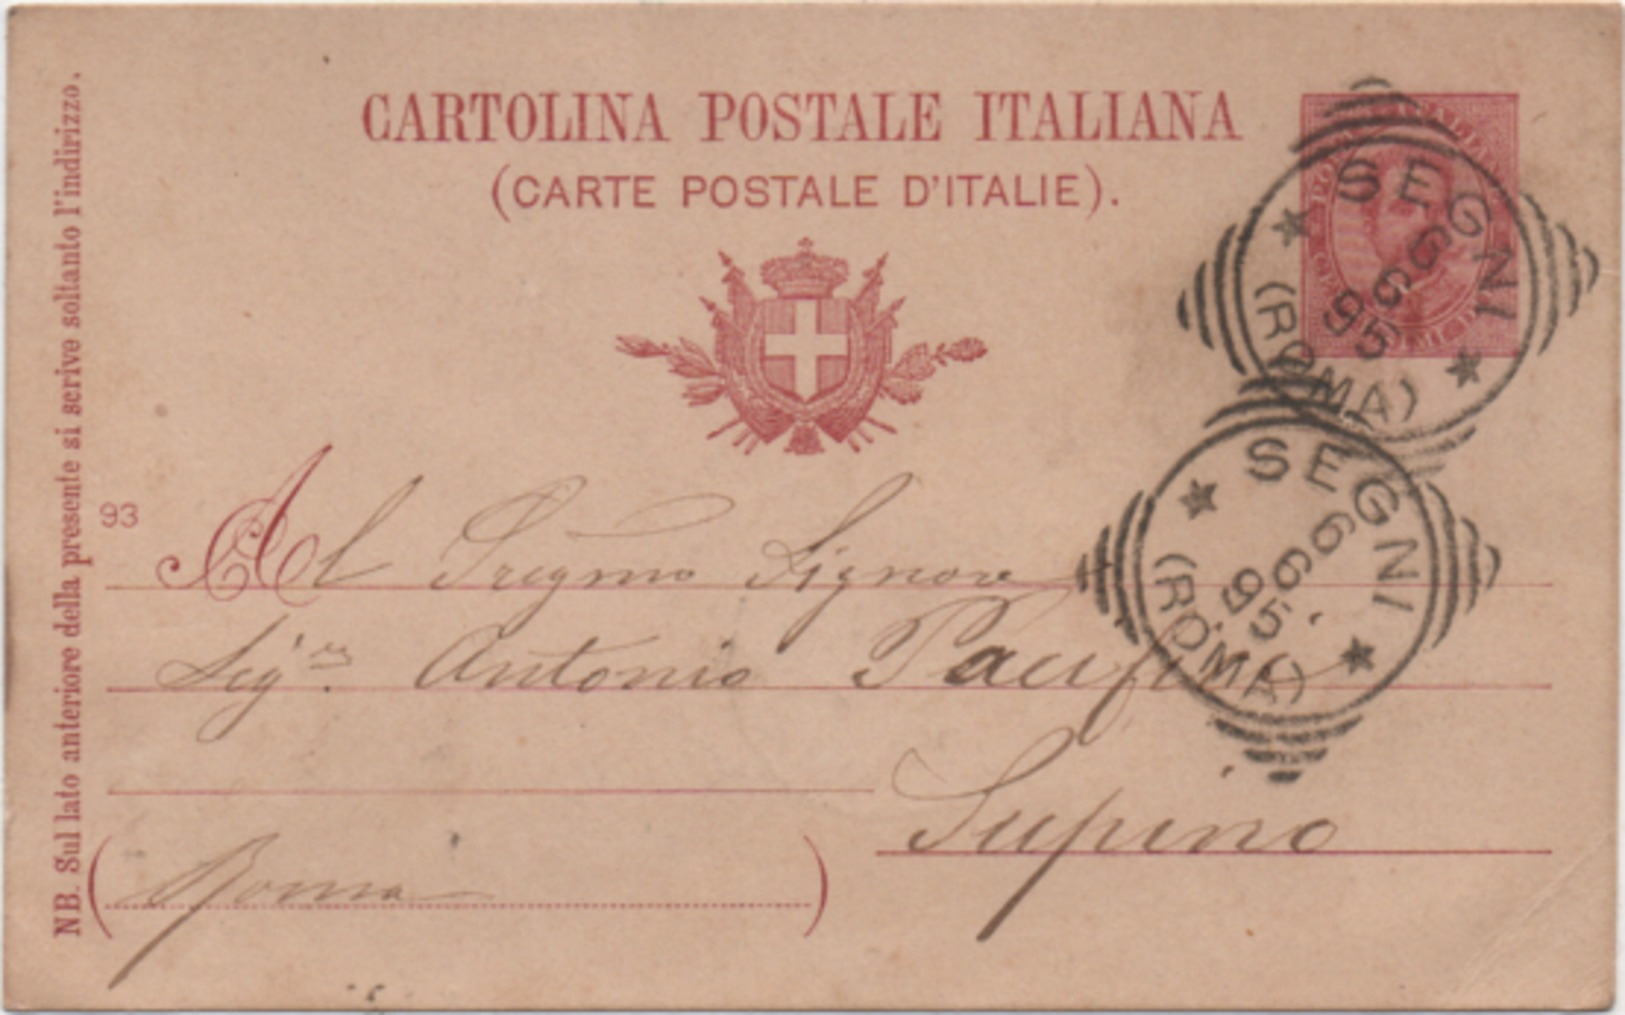 Cartolina Postale Cent. 10 Effigie Viaggiata Con Annullo Tondoriquadrato Segni (Roma) 06.06.1895 - Interi Postali